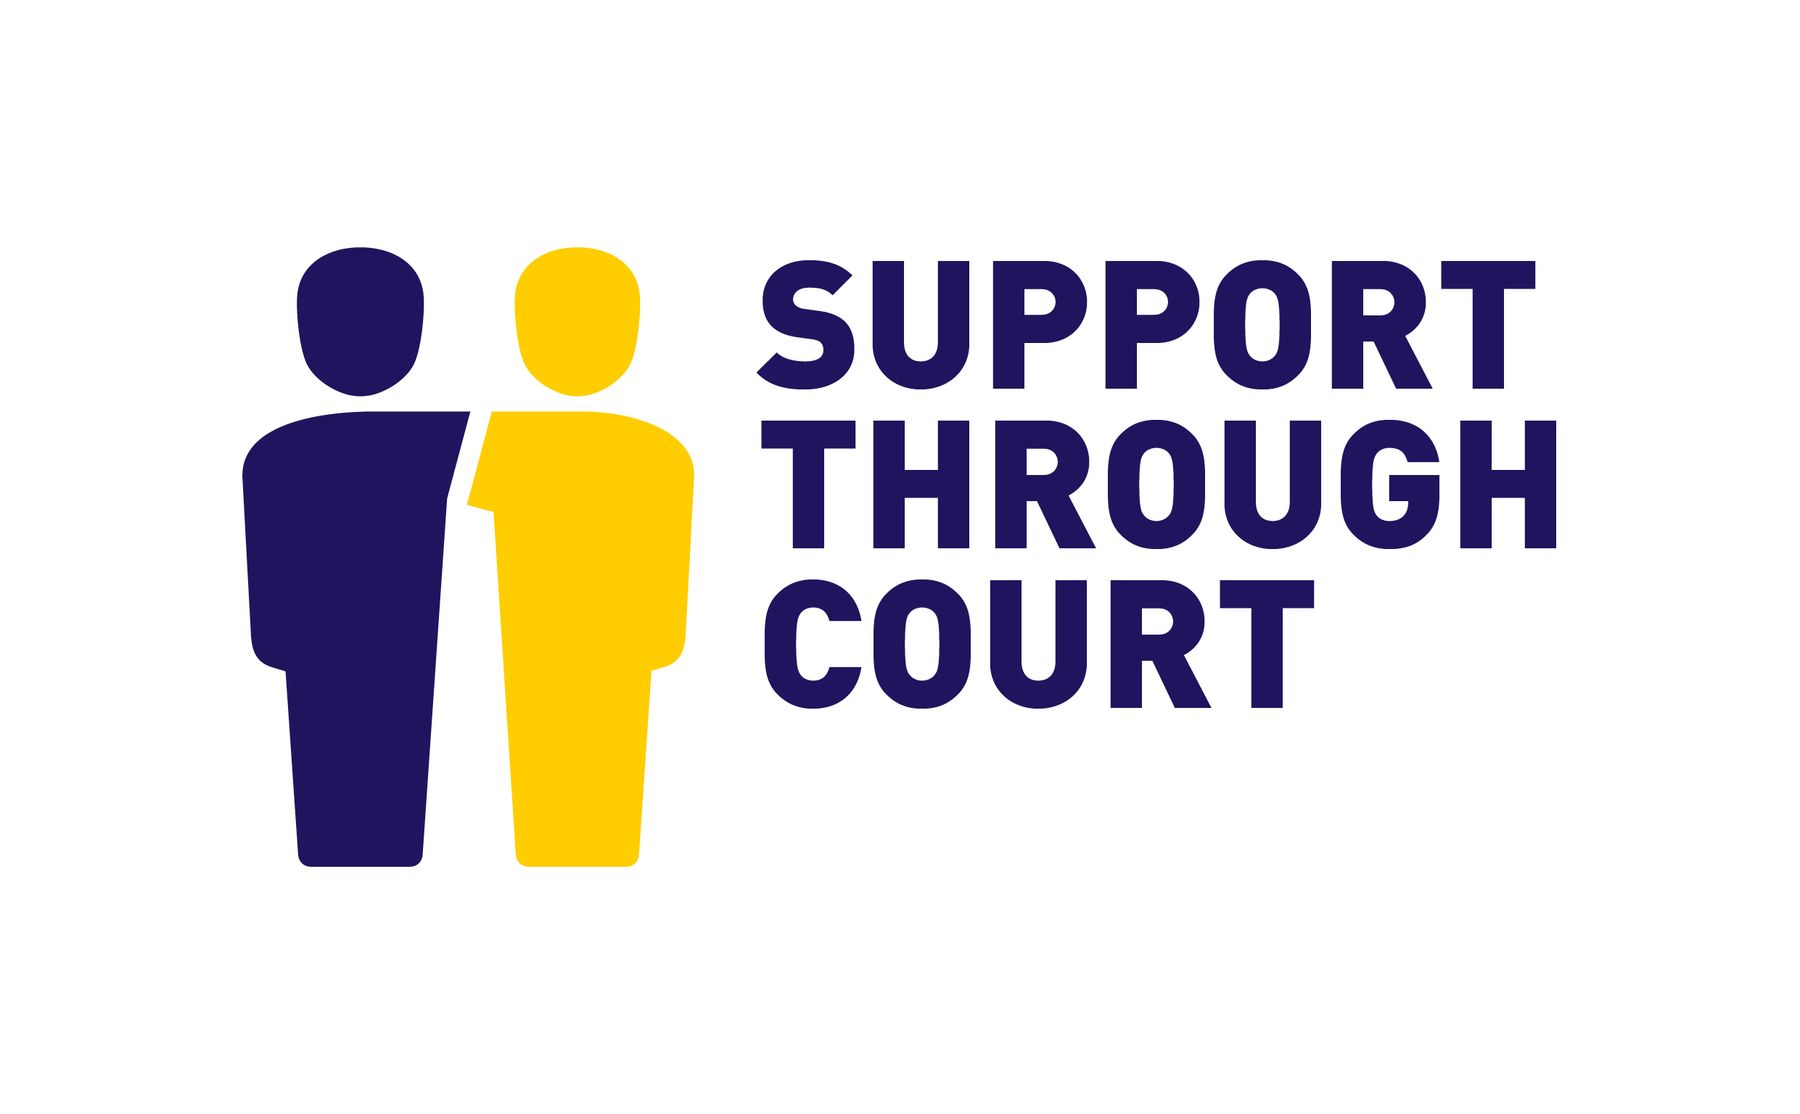 Support Through Court logo